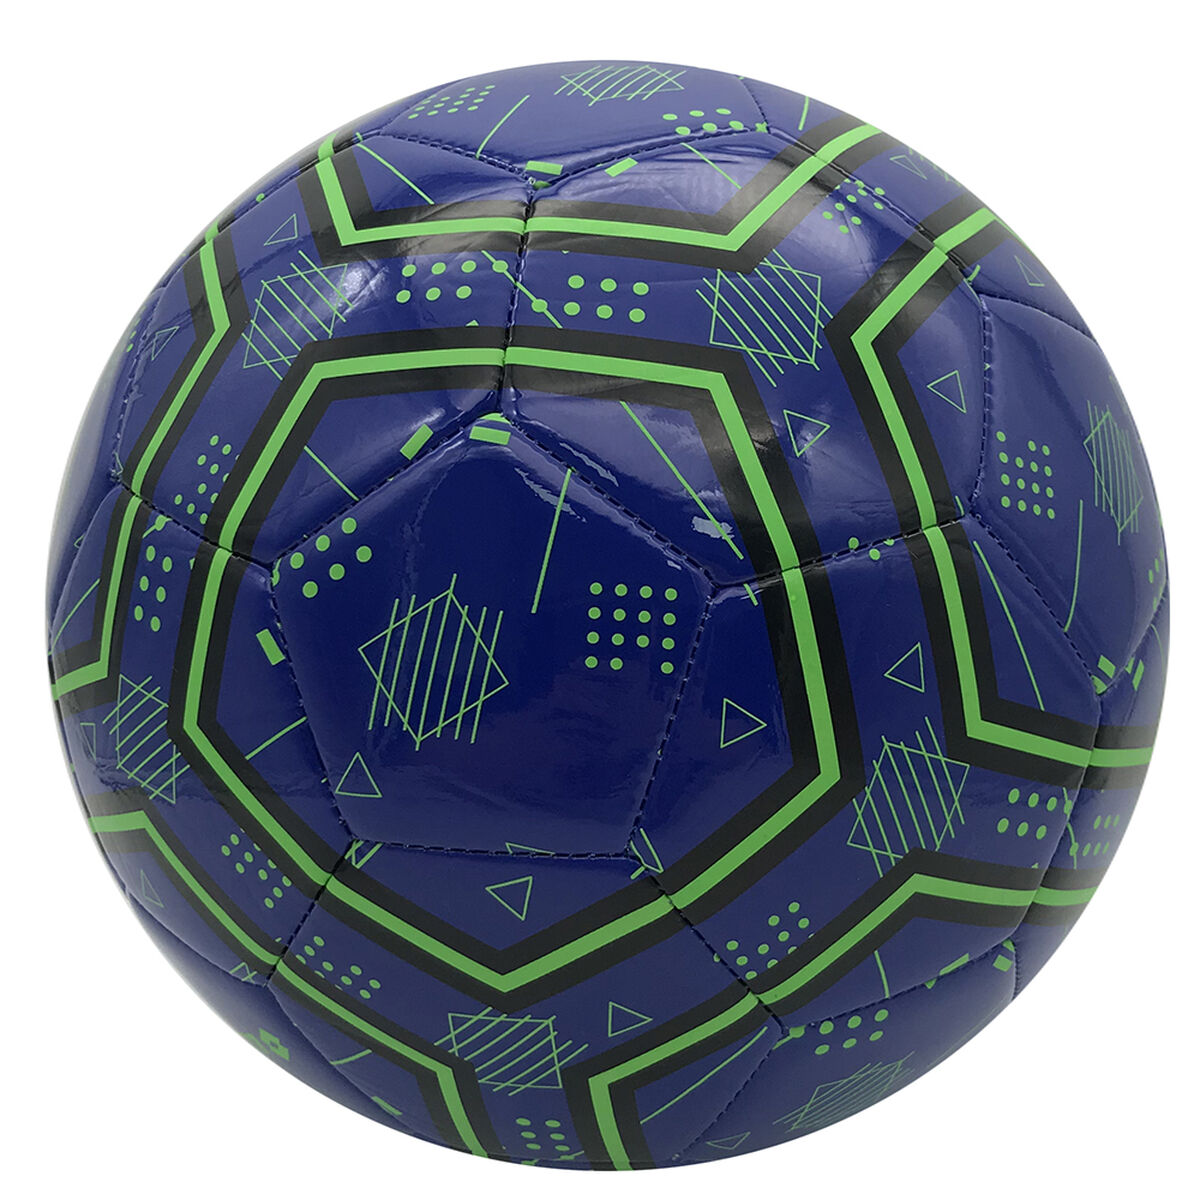 Balón de Fútbol Lotto Balavant3